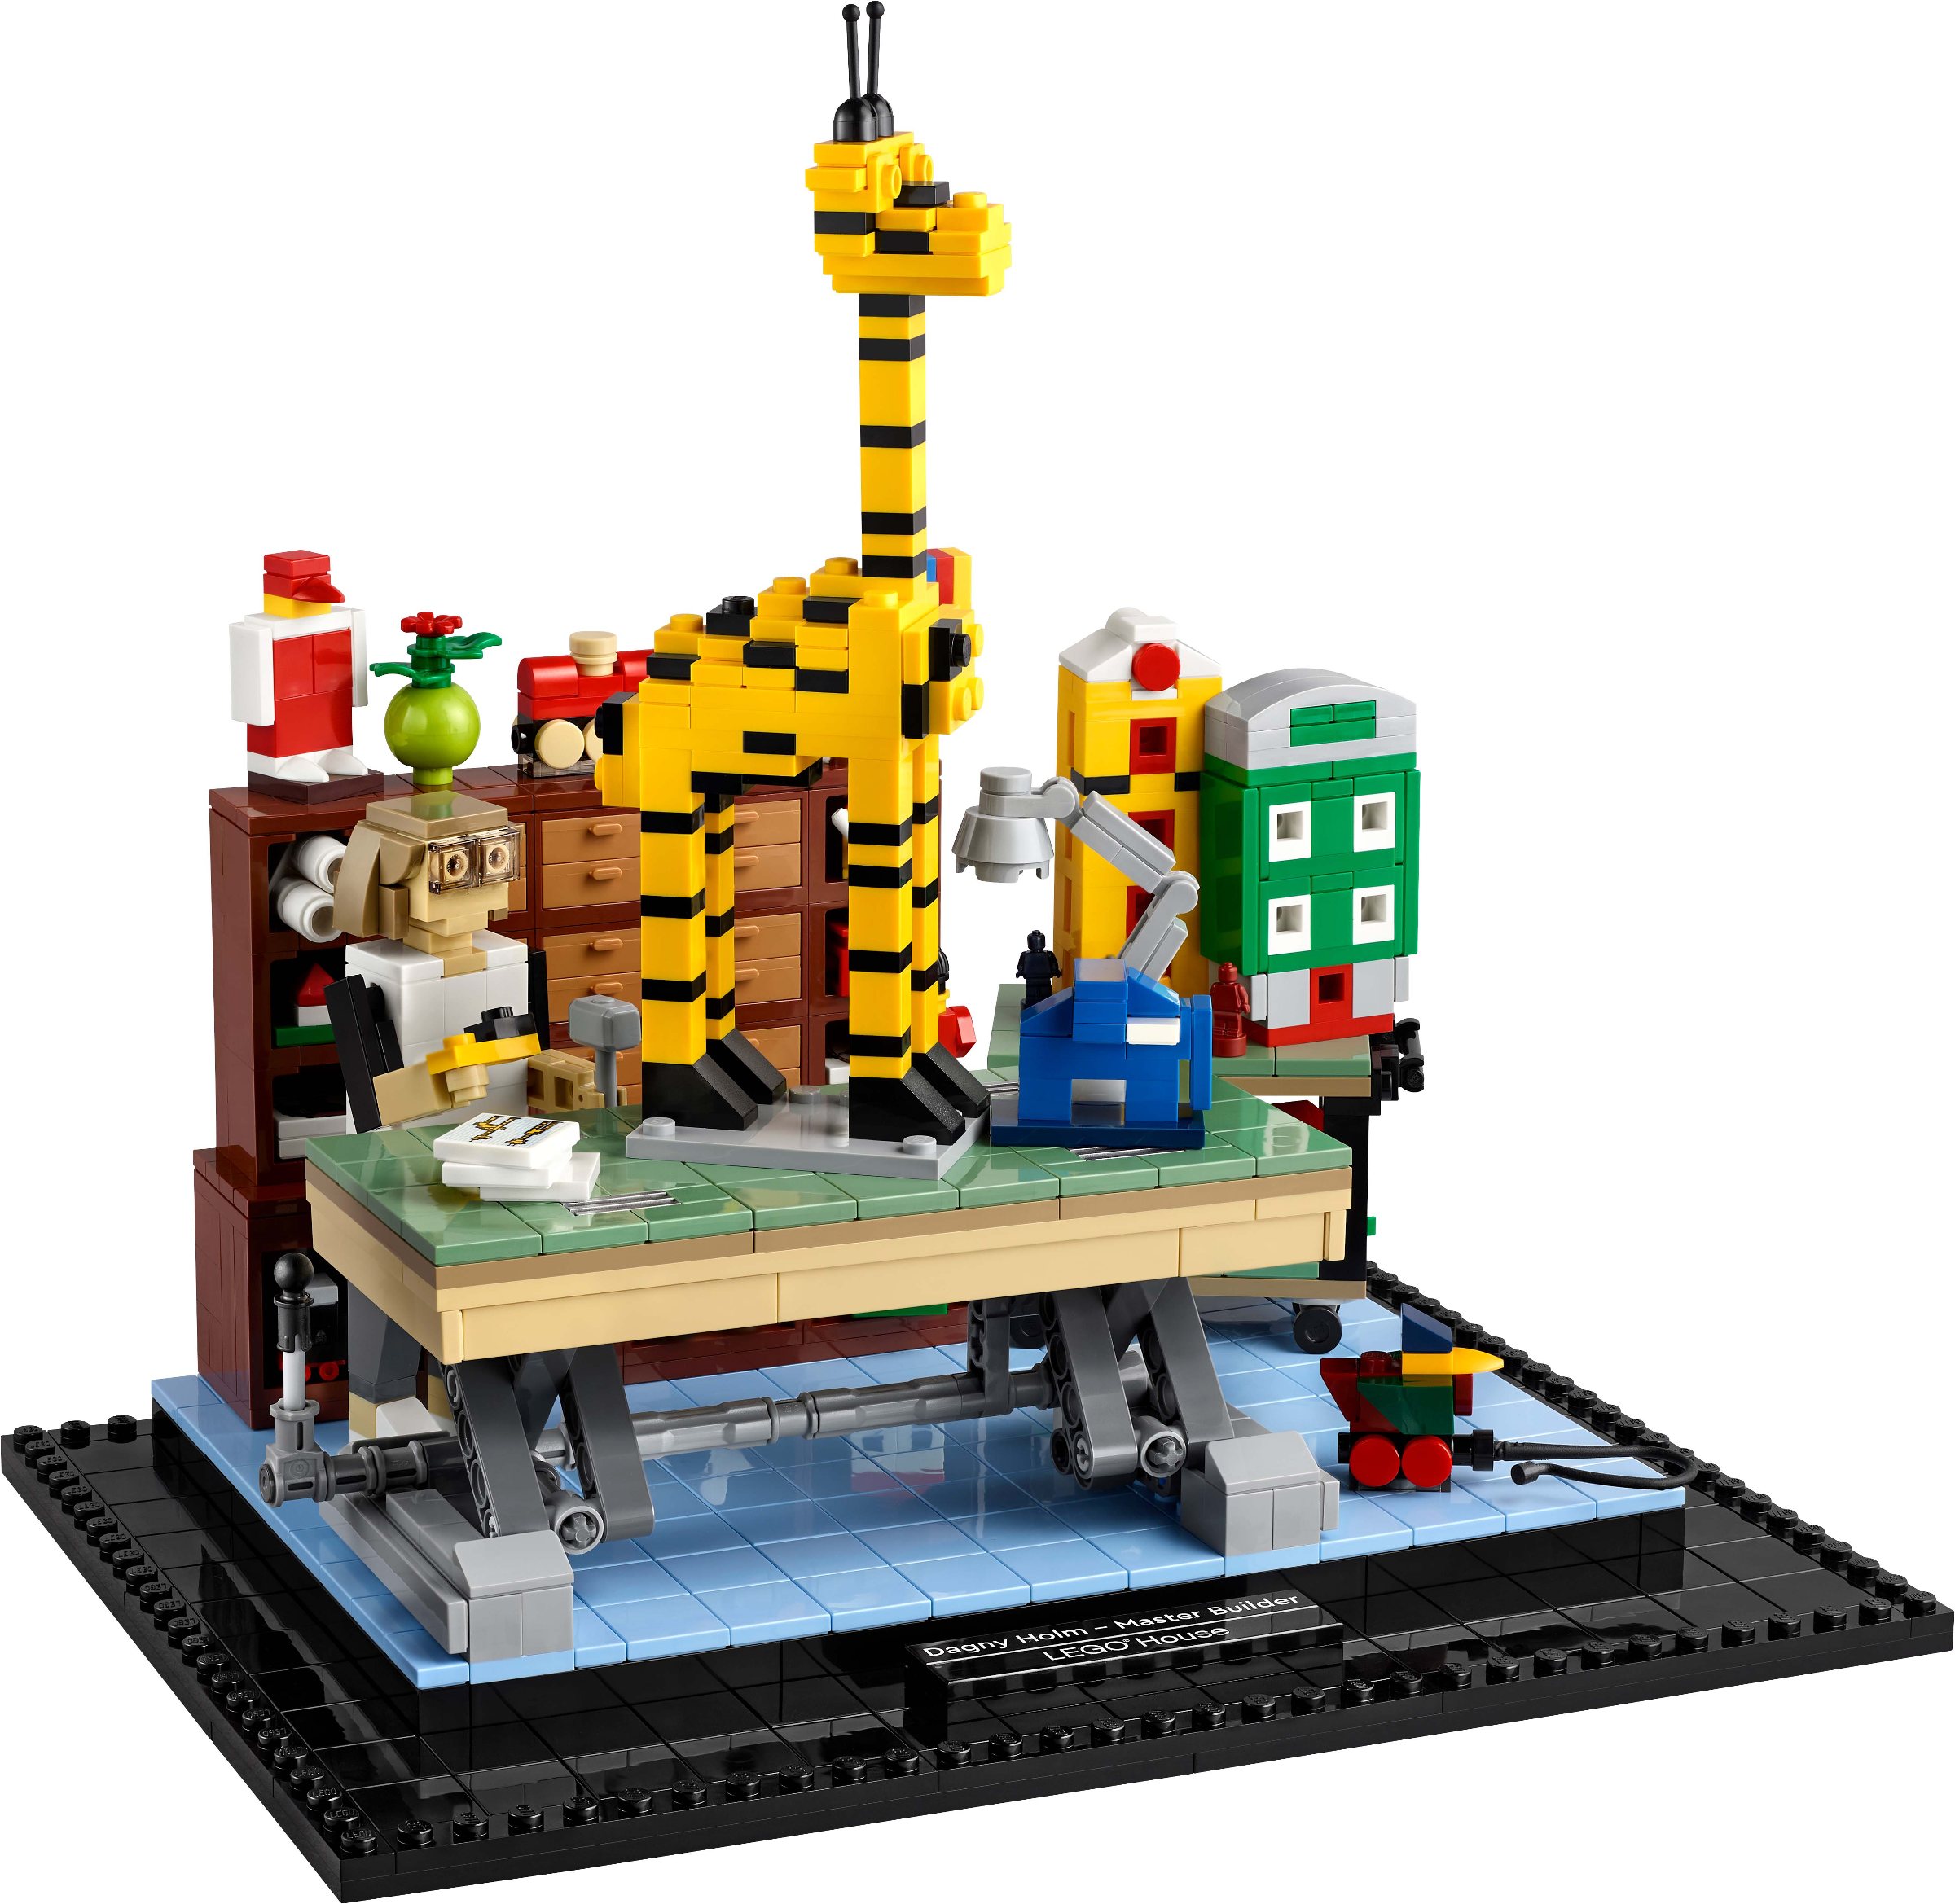 New LEGO House exclusive set revealed Brickset